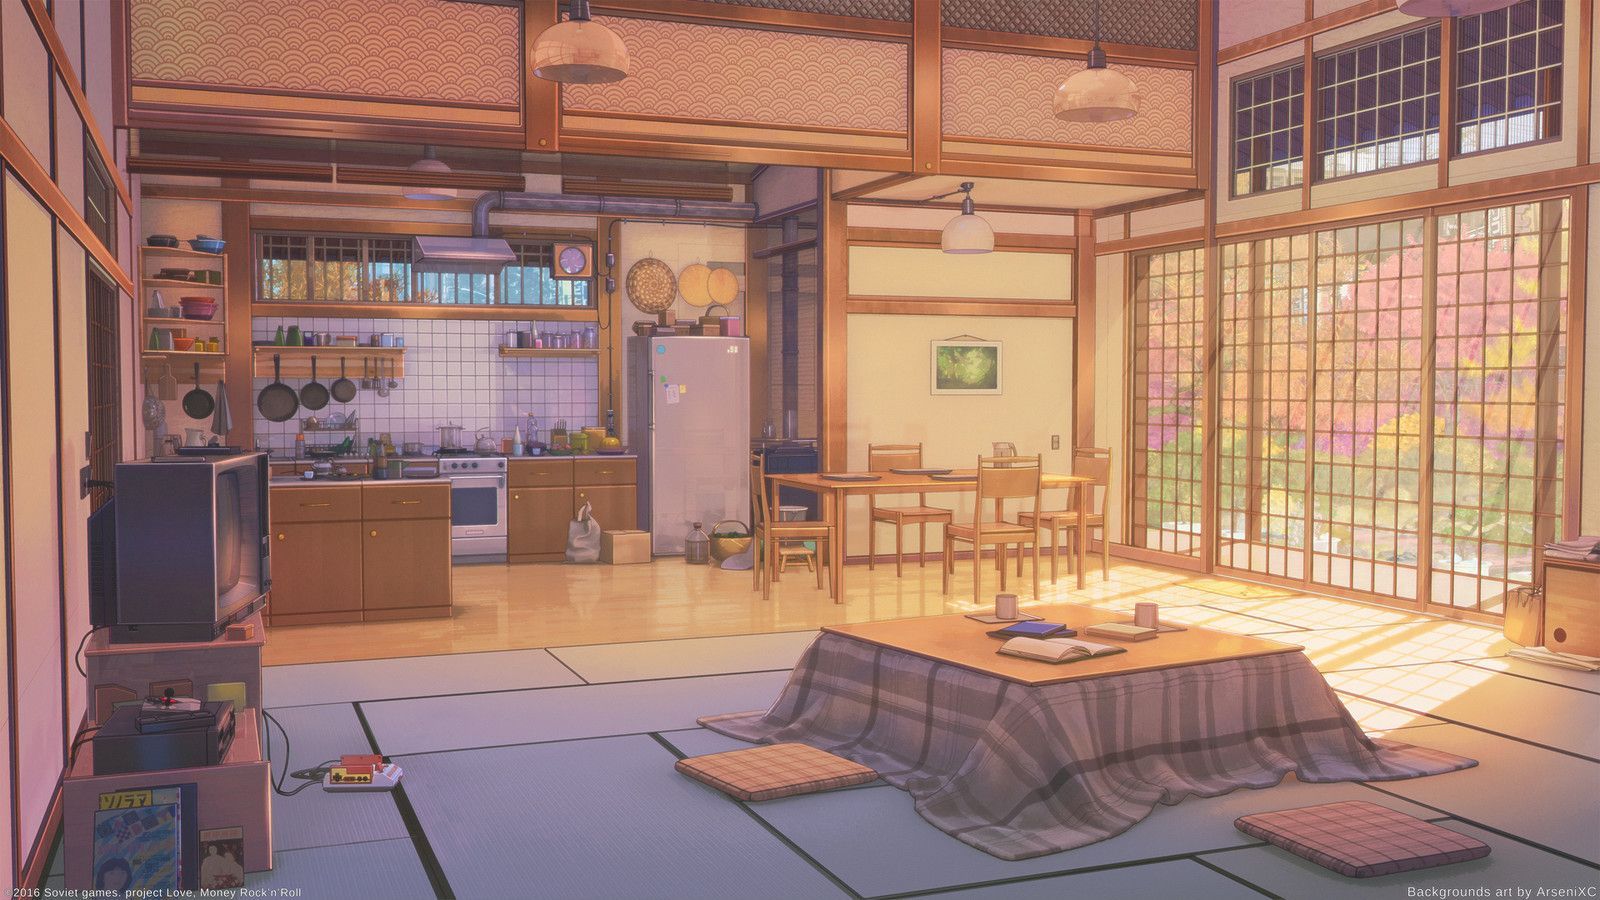 Nếu bạn là một fan của anime và thích những hình ảnh về các ngôi nhà anime đầy sắc màu và ngộ nghĩnh, thì hãy đến với Anime House Wallpapers trên Wallpaper Cave. Những hình ảnh này sẽ khiến bạn say mê và mê mẩn ngay từ cái nhìn đầu tiên.